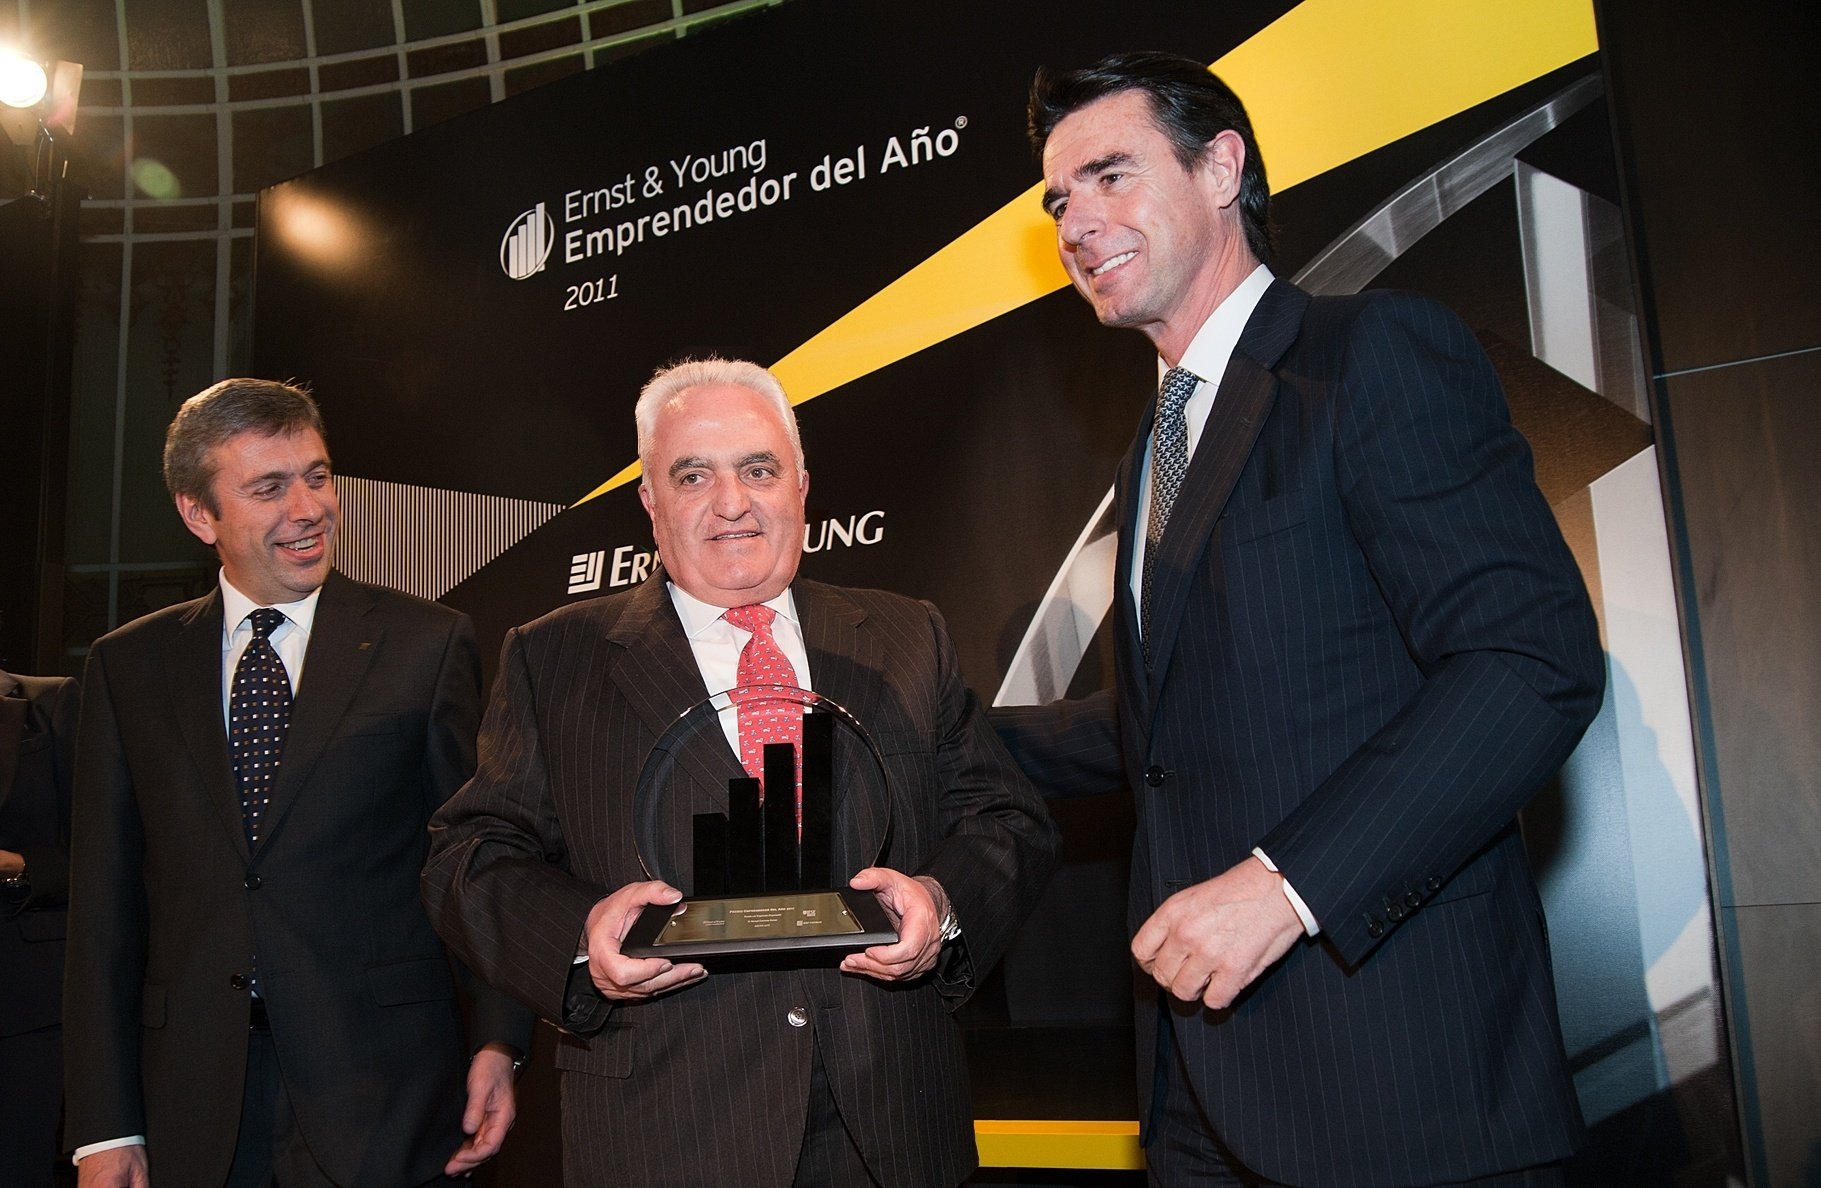 Manuel Contreras, de Azvi, gana el Premio a la Trayectoria Empresarial 2011, que otorga Ernst&Young